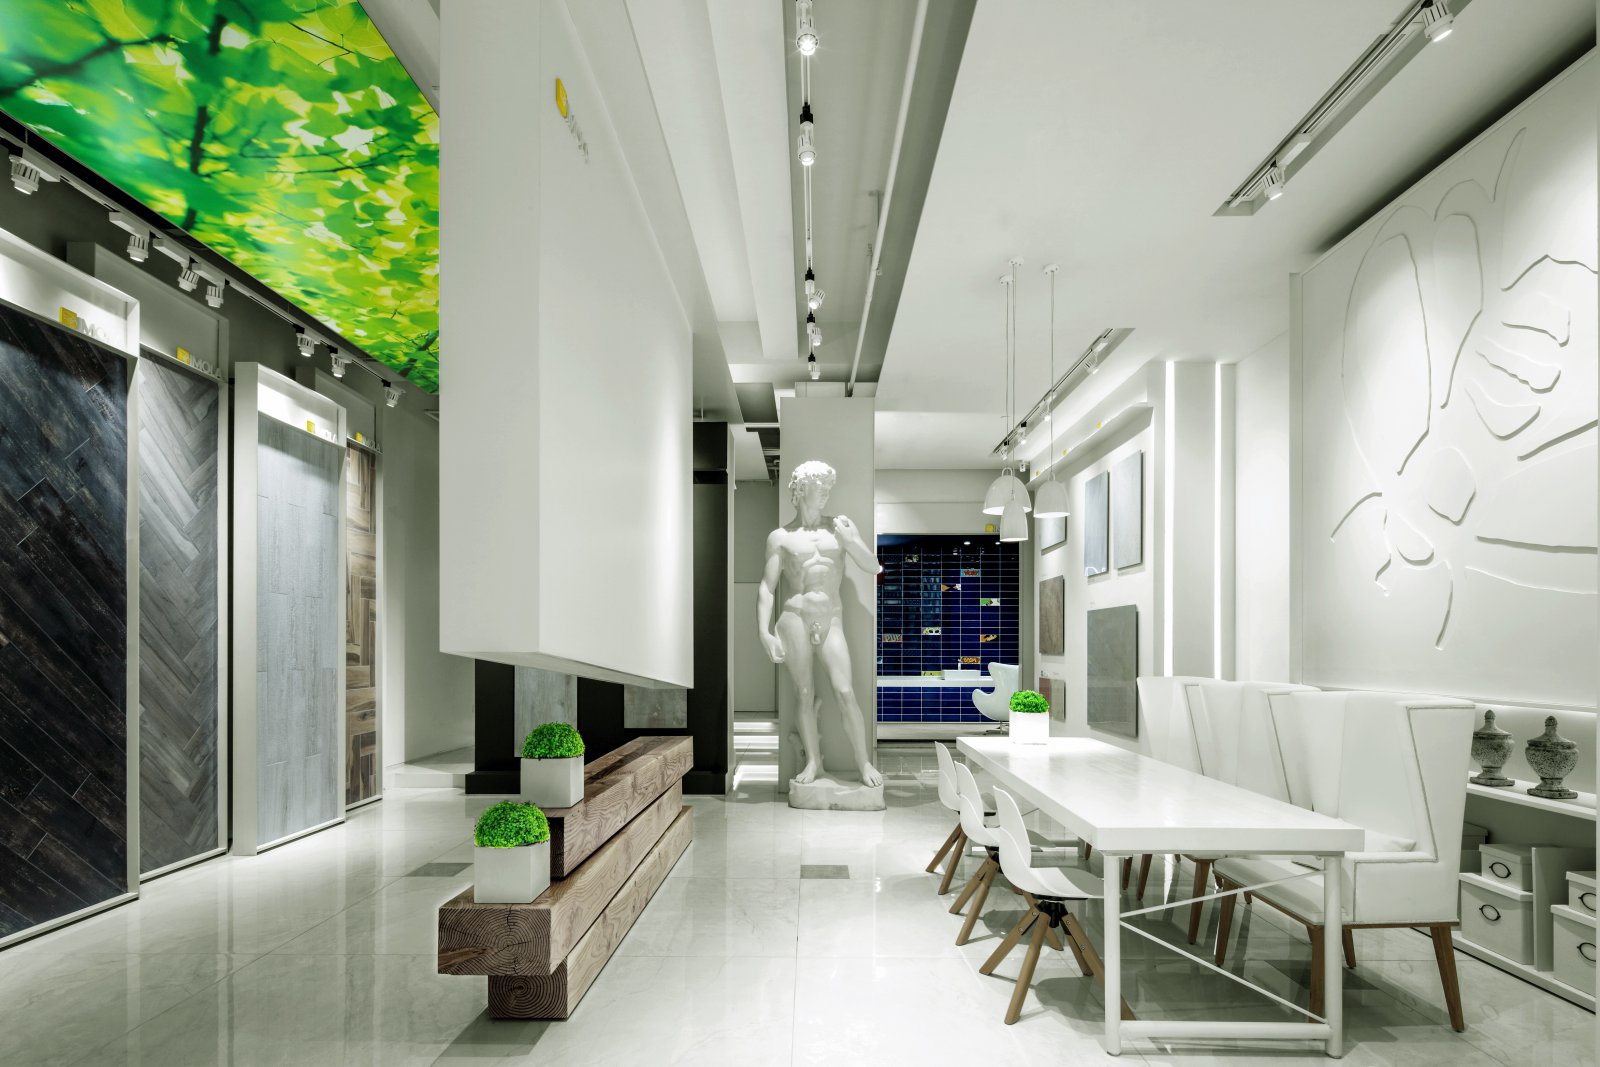 意大利 IMOLA 陶瓷展陈空间设计现代展馆展厅